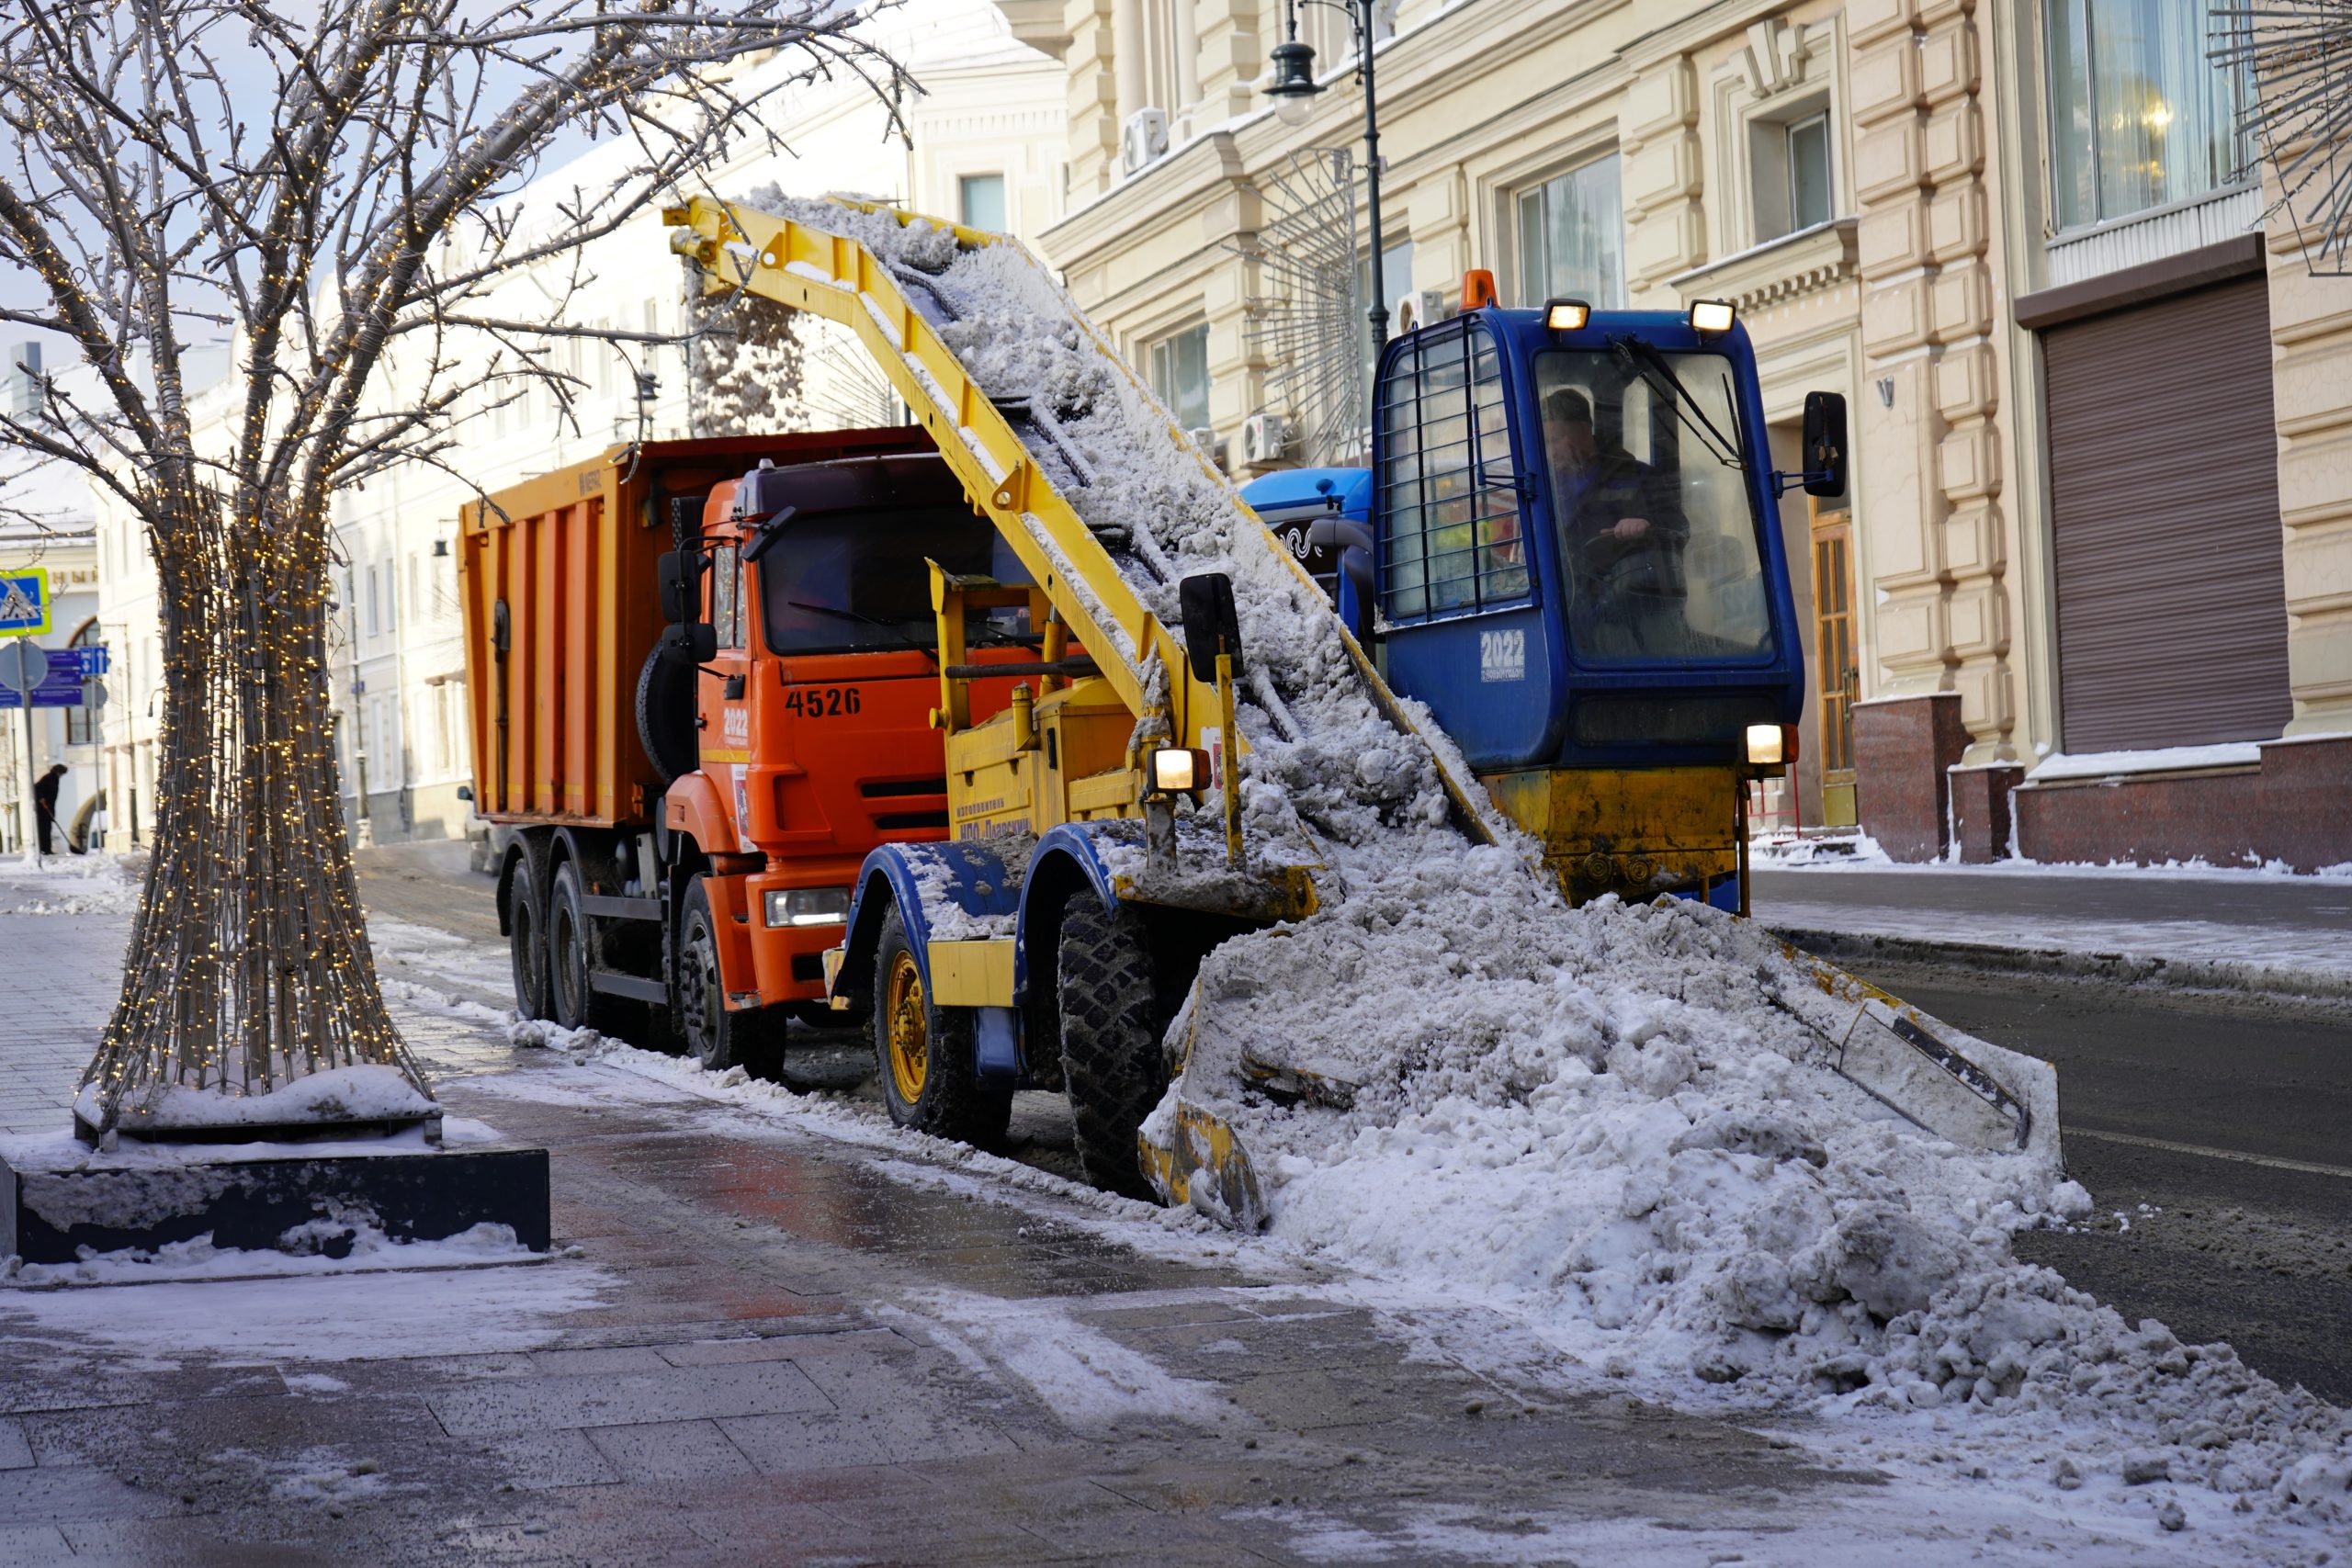 Усиленный режим работы служб по уборке и вывозу снега ввели в районе Якиманка. Фото: Анна Быкова